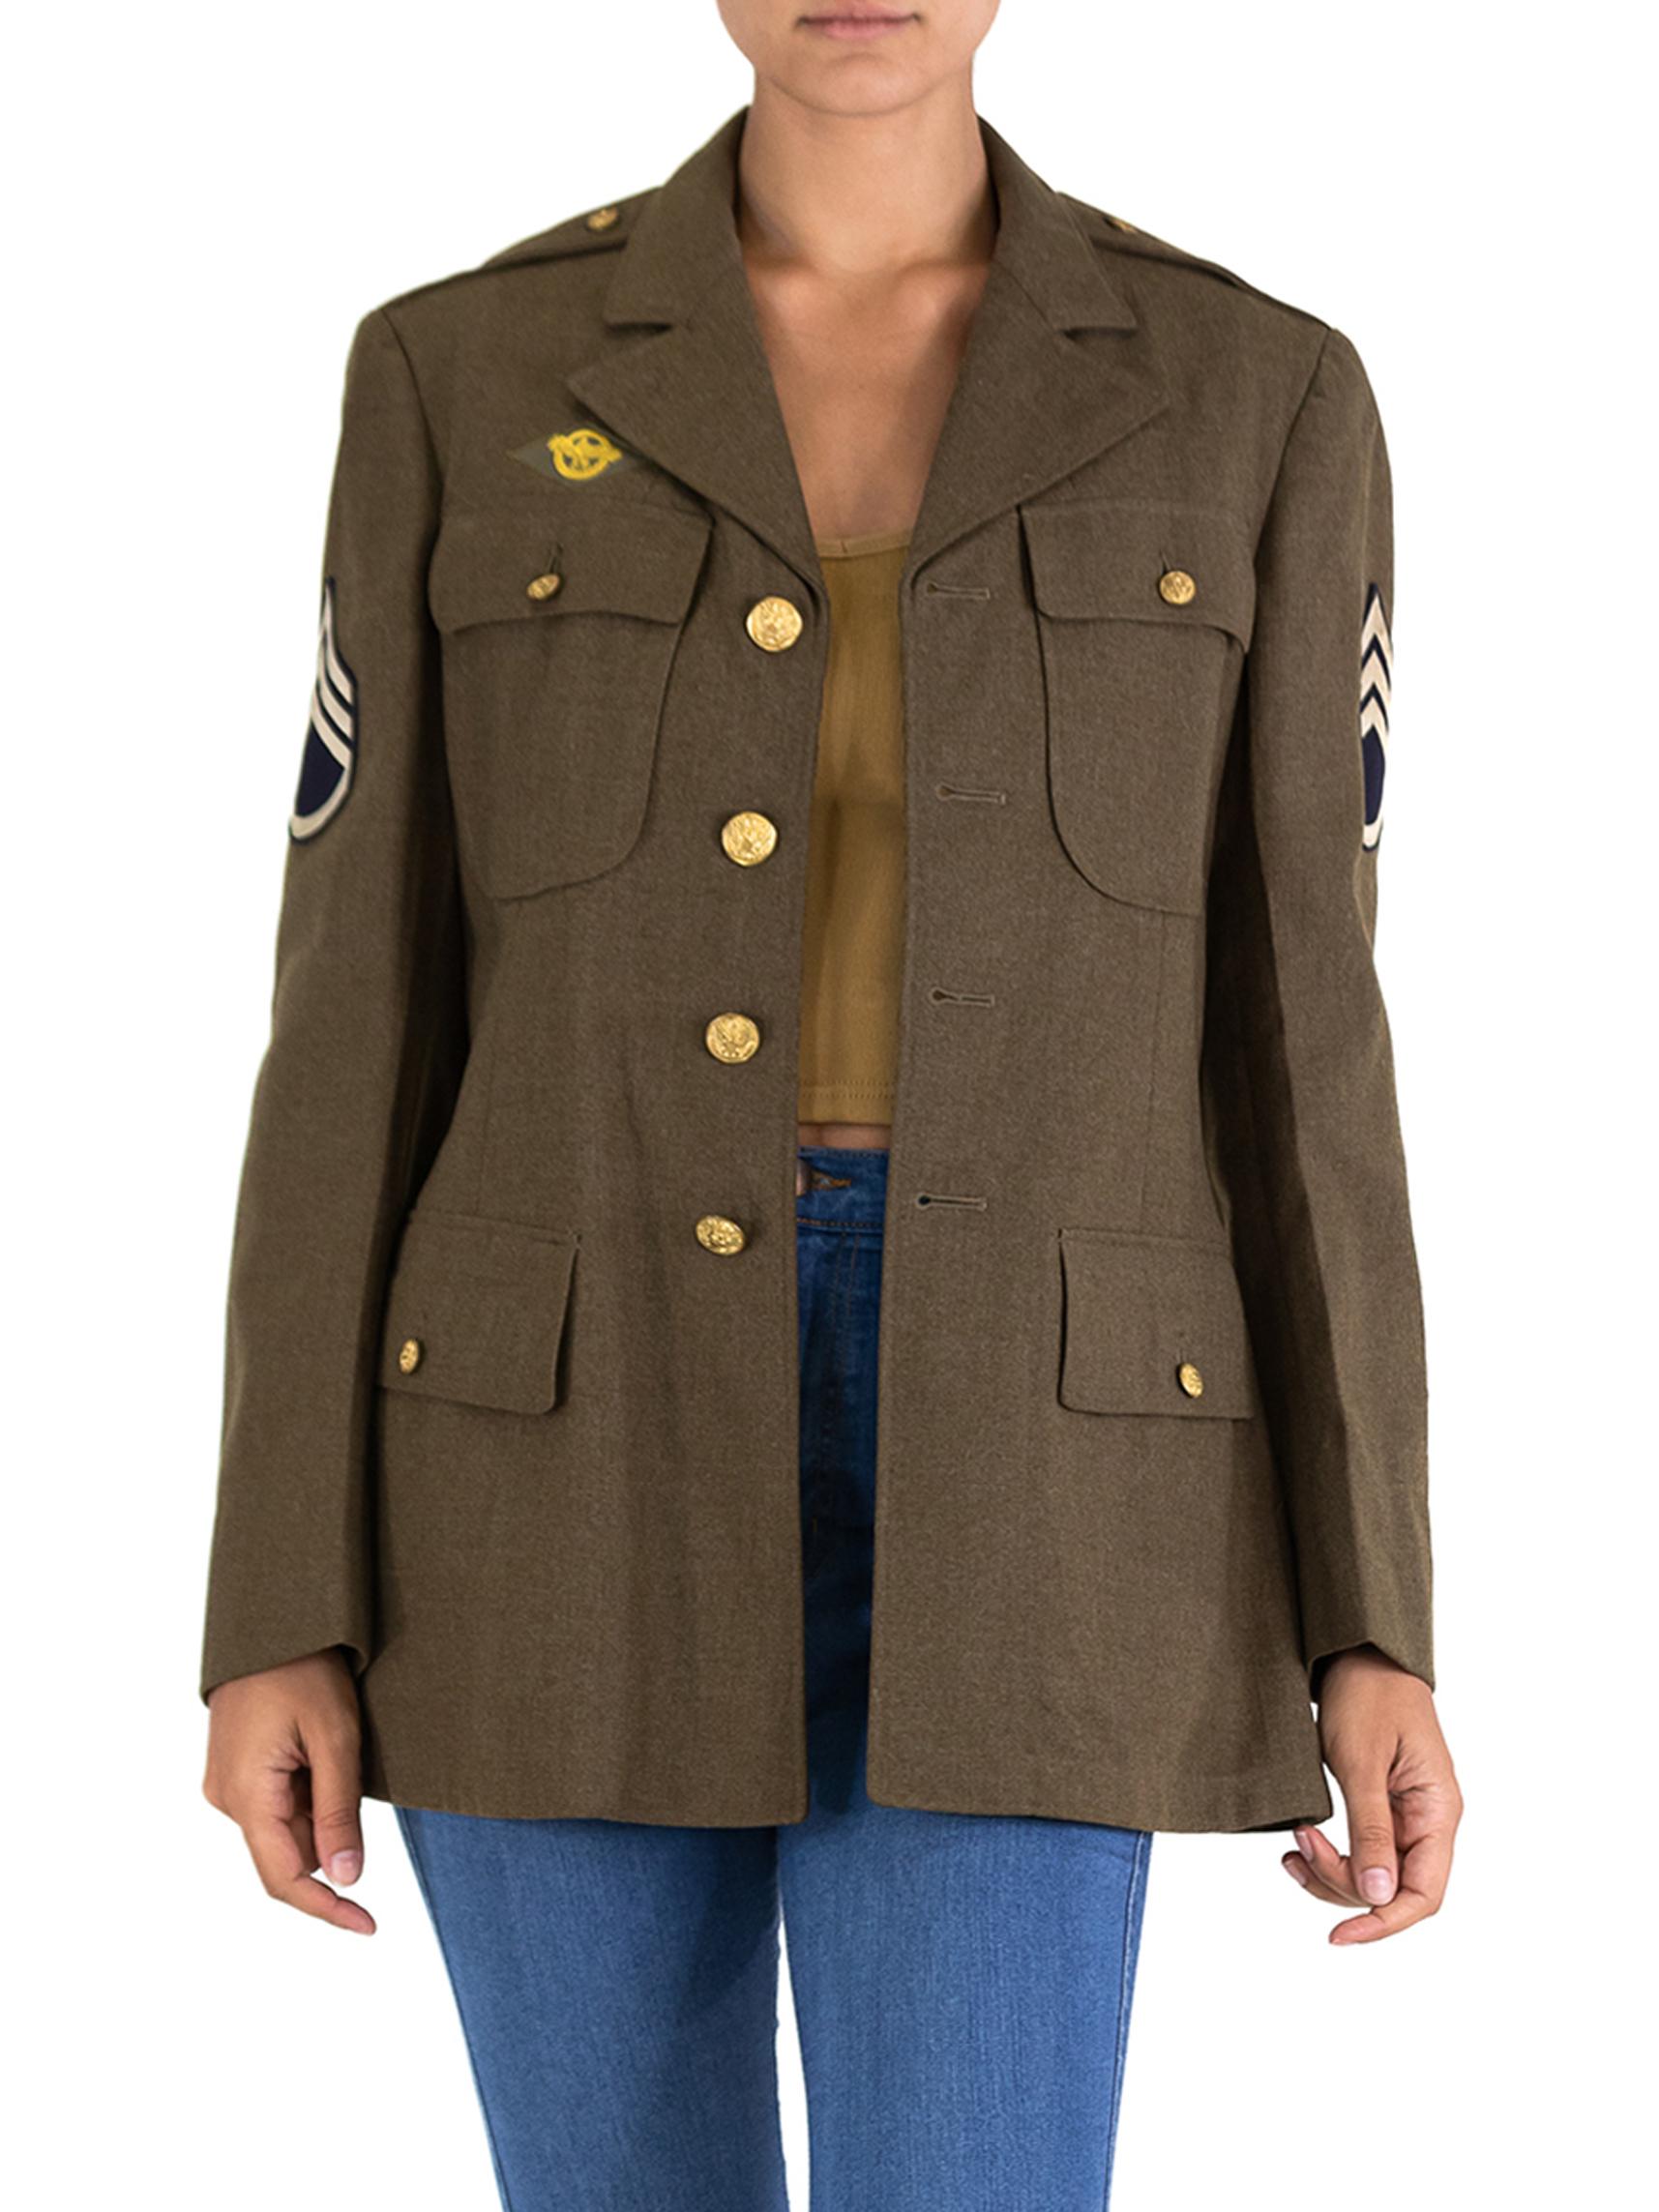 1940s army jacket